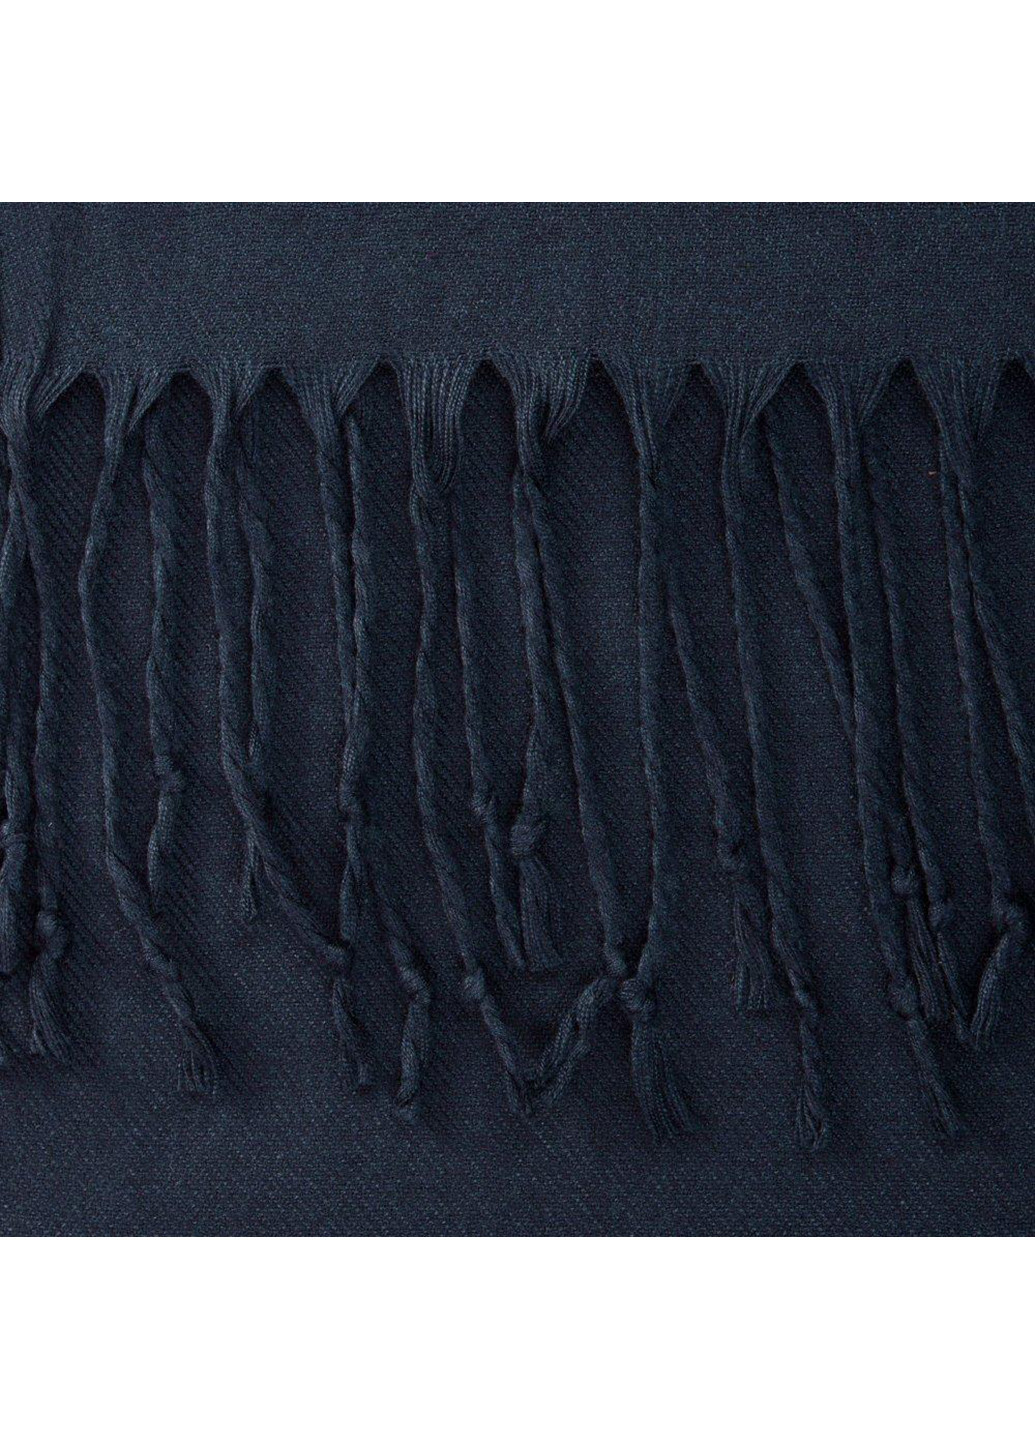 Жіночий шарф палантин 184х74 см Zambak (250097274)